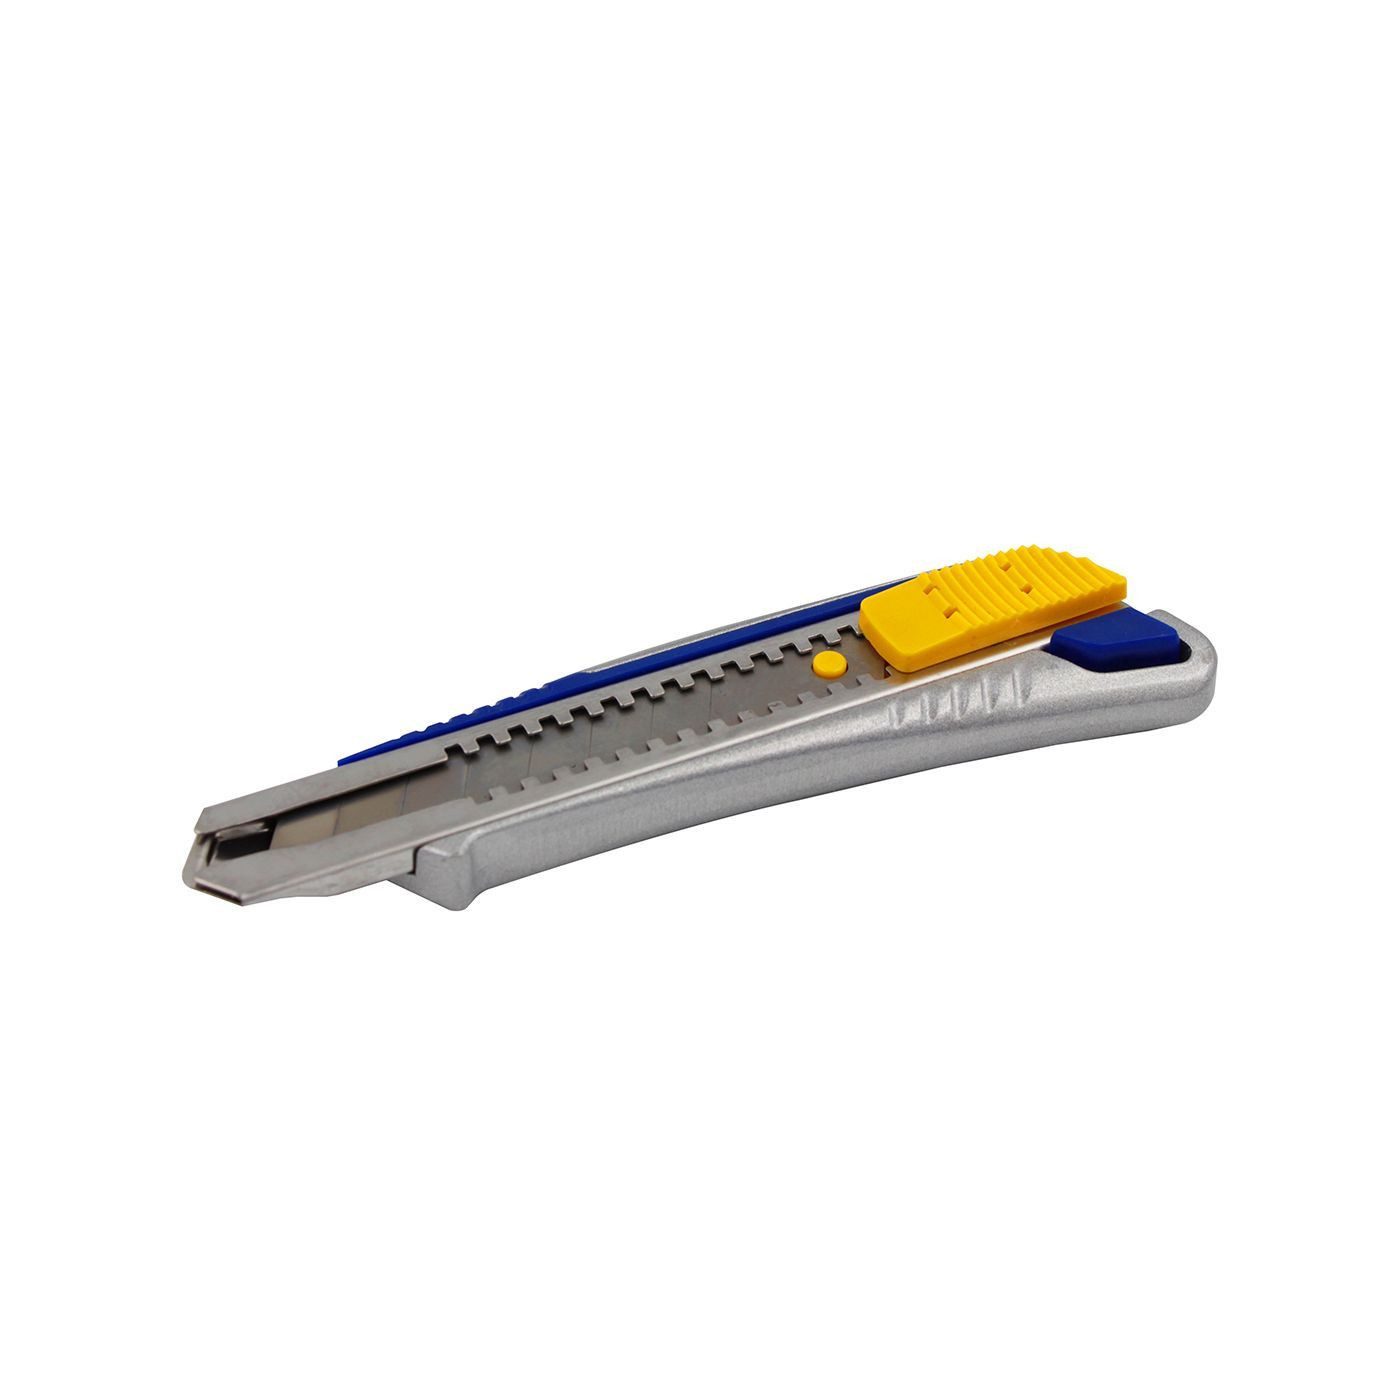 KUBIS Cuttermesser Schneidemesser / Cutter mit einer einziehbaren Kl